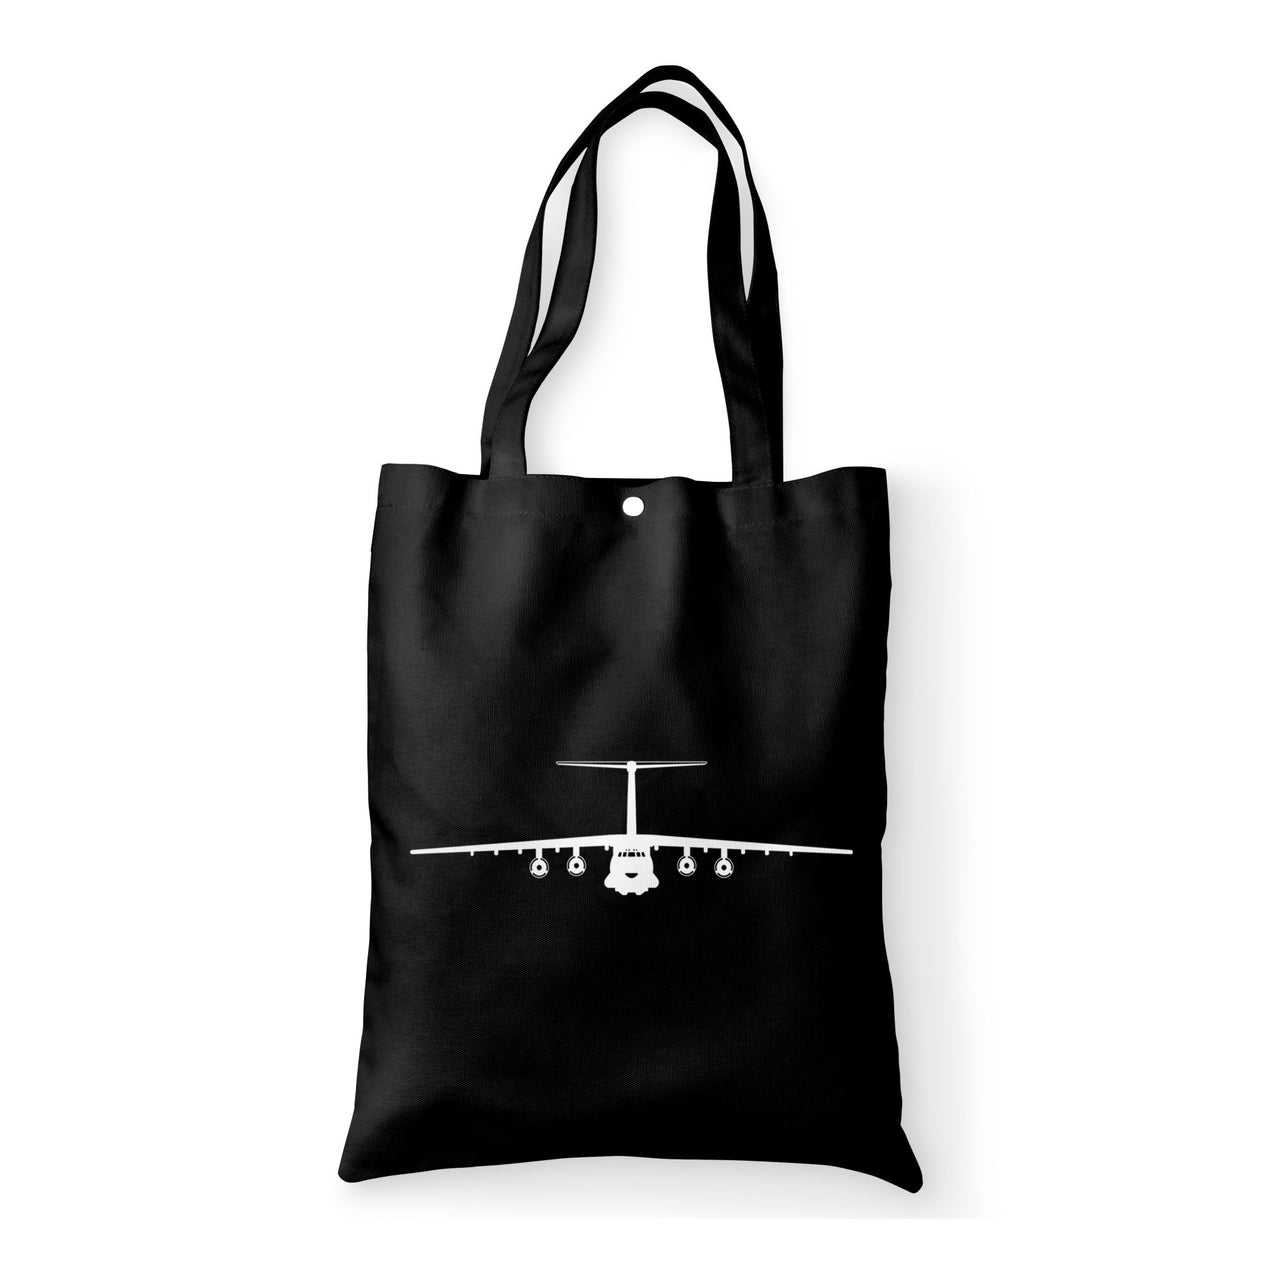 Ilyushin IL-76 Silhouette Designed Tote Bags